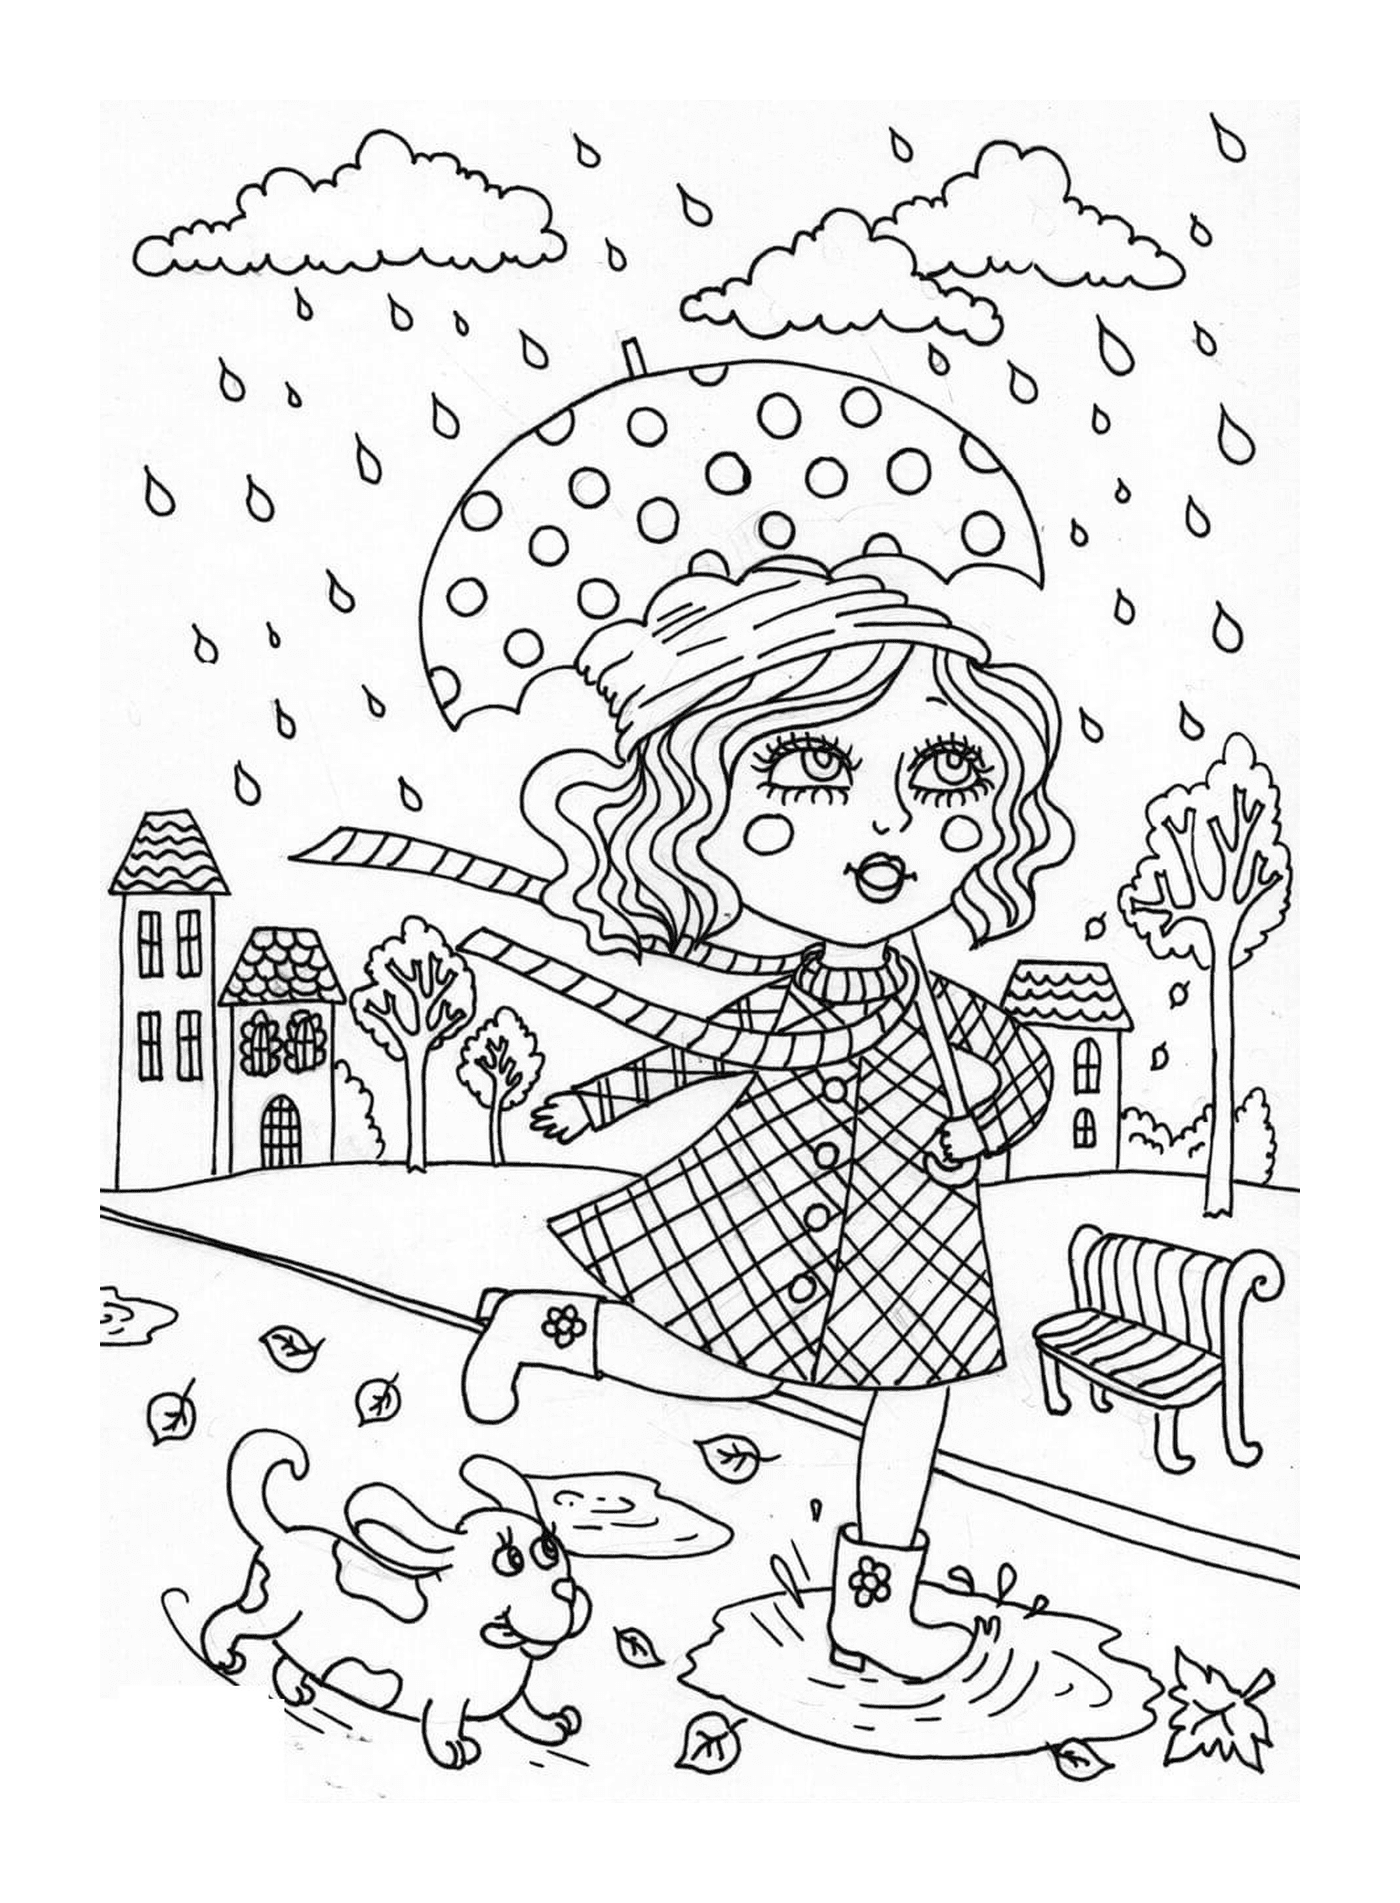  A girl with an umbrella 